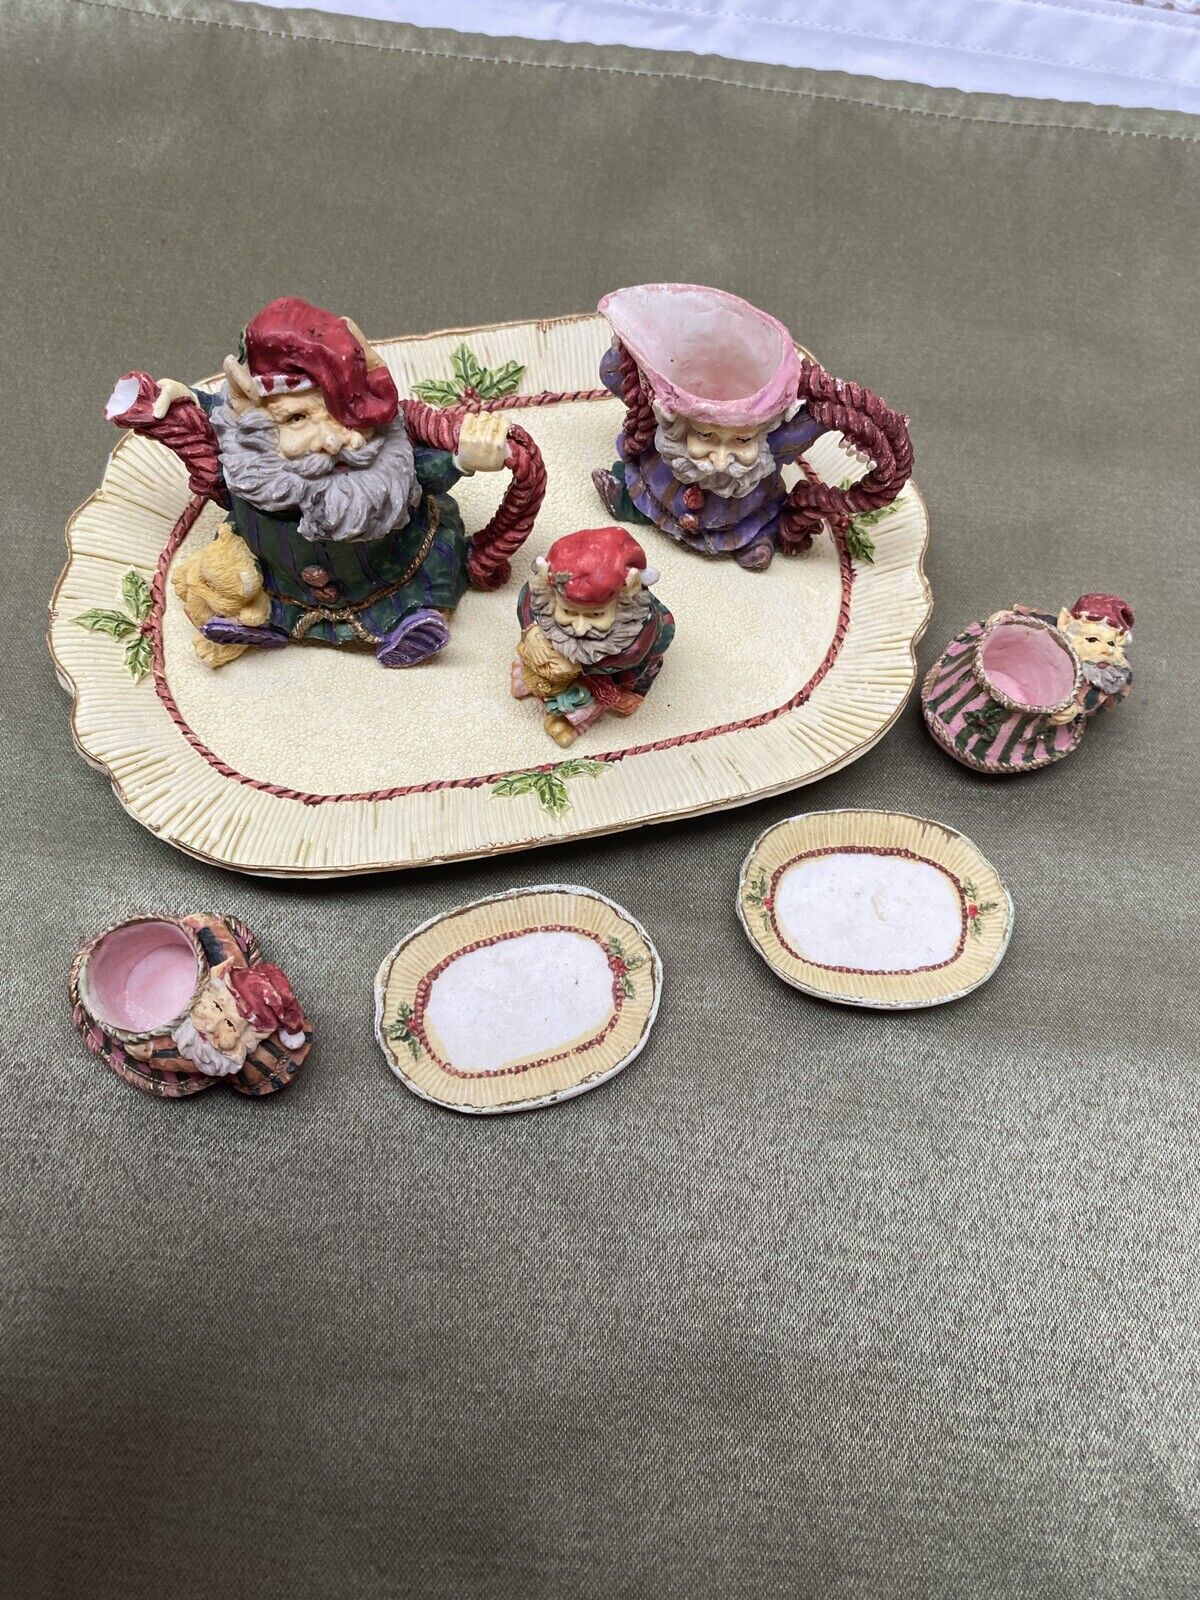 Vintage Miniature Tea Set with Santa Claus & Elves 10 pcs Holiday Decor